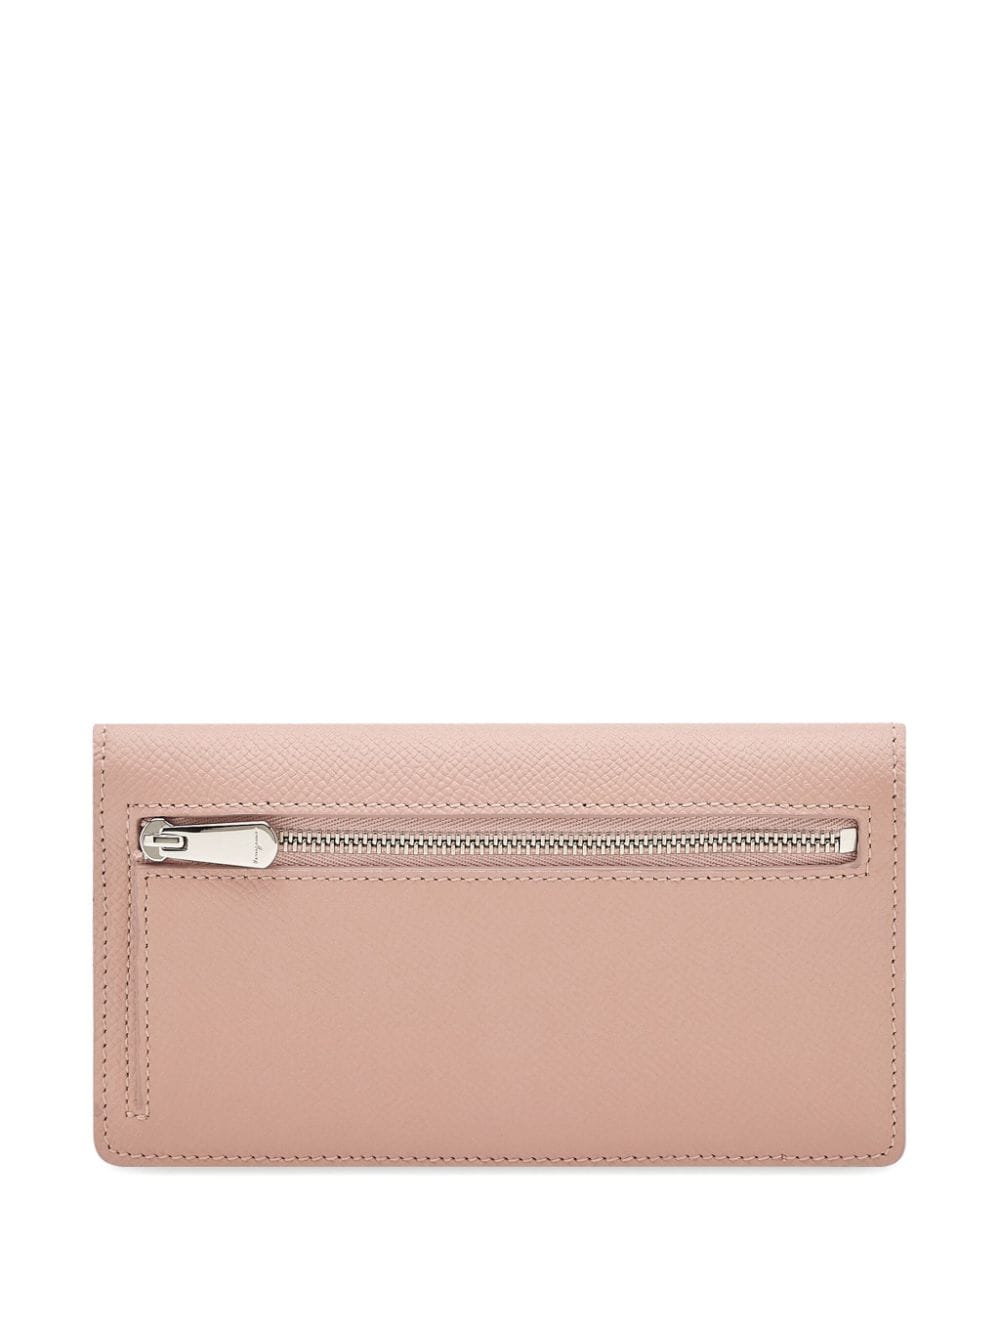 Ferragamo Gancini leather wallet - Roze